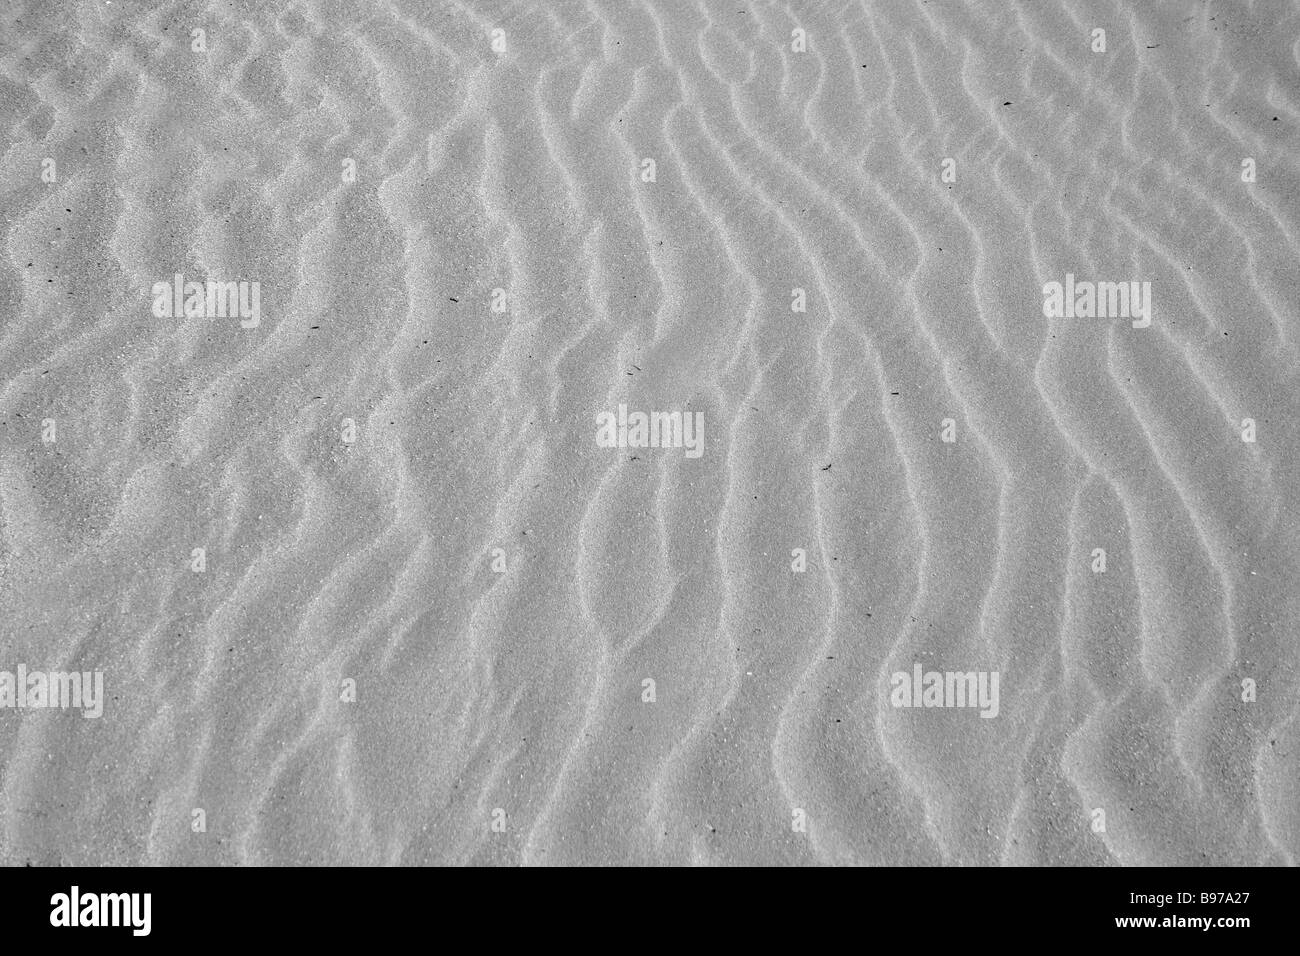 Plage avec sable mou, ridée de texture effet soulevée par le vent Banque D'Images